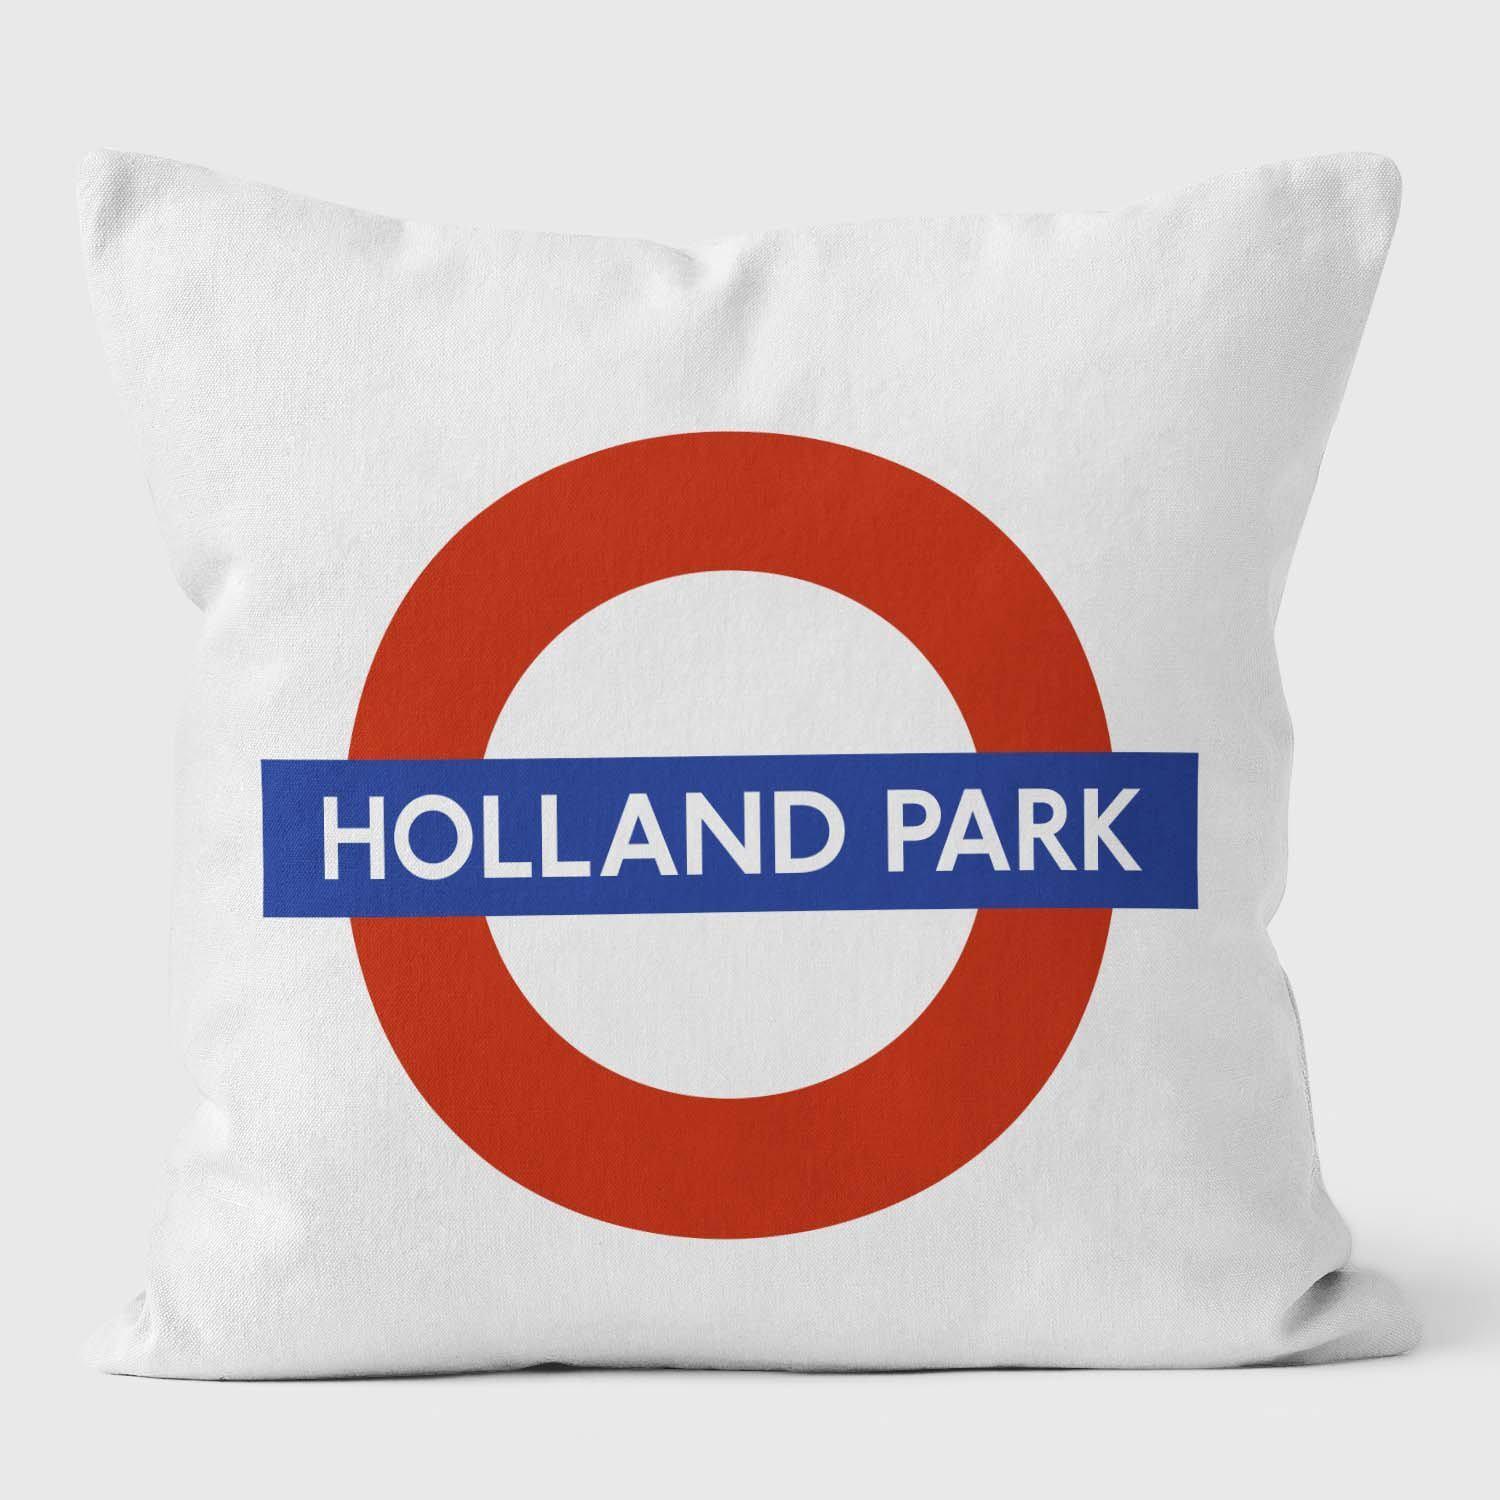 Holland Park London Underground Tube Station Roundel Cushion ...